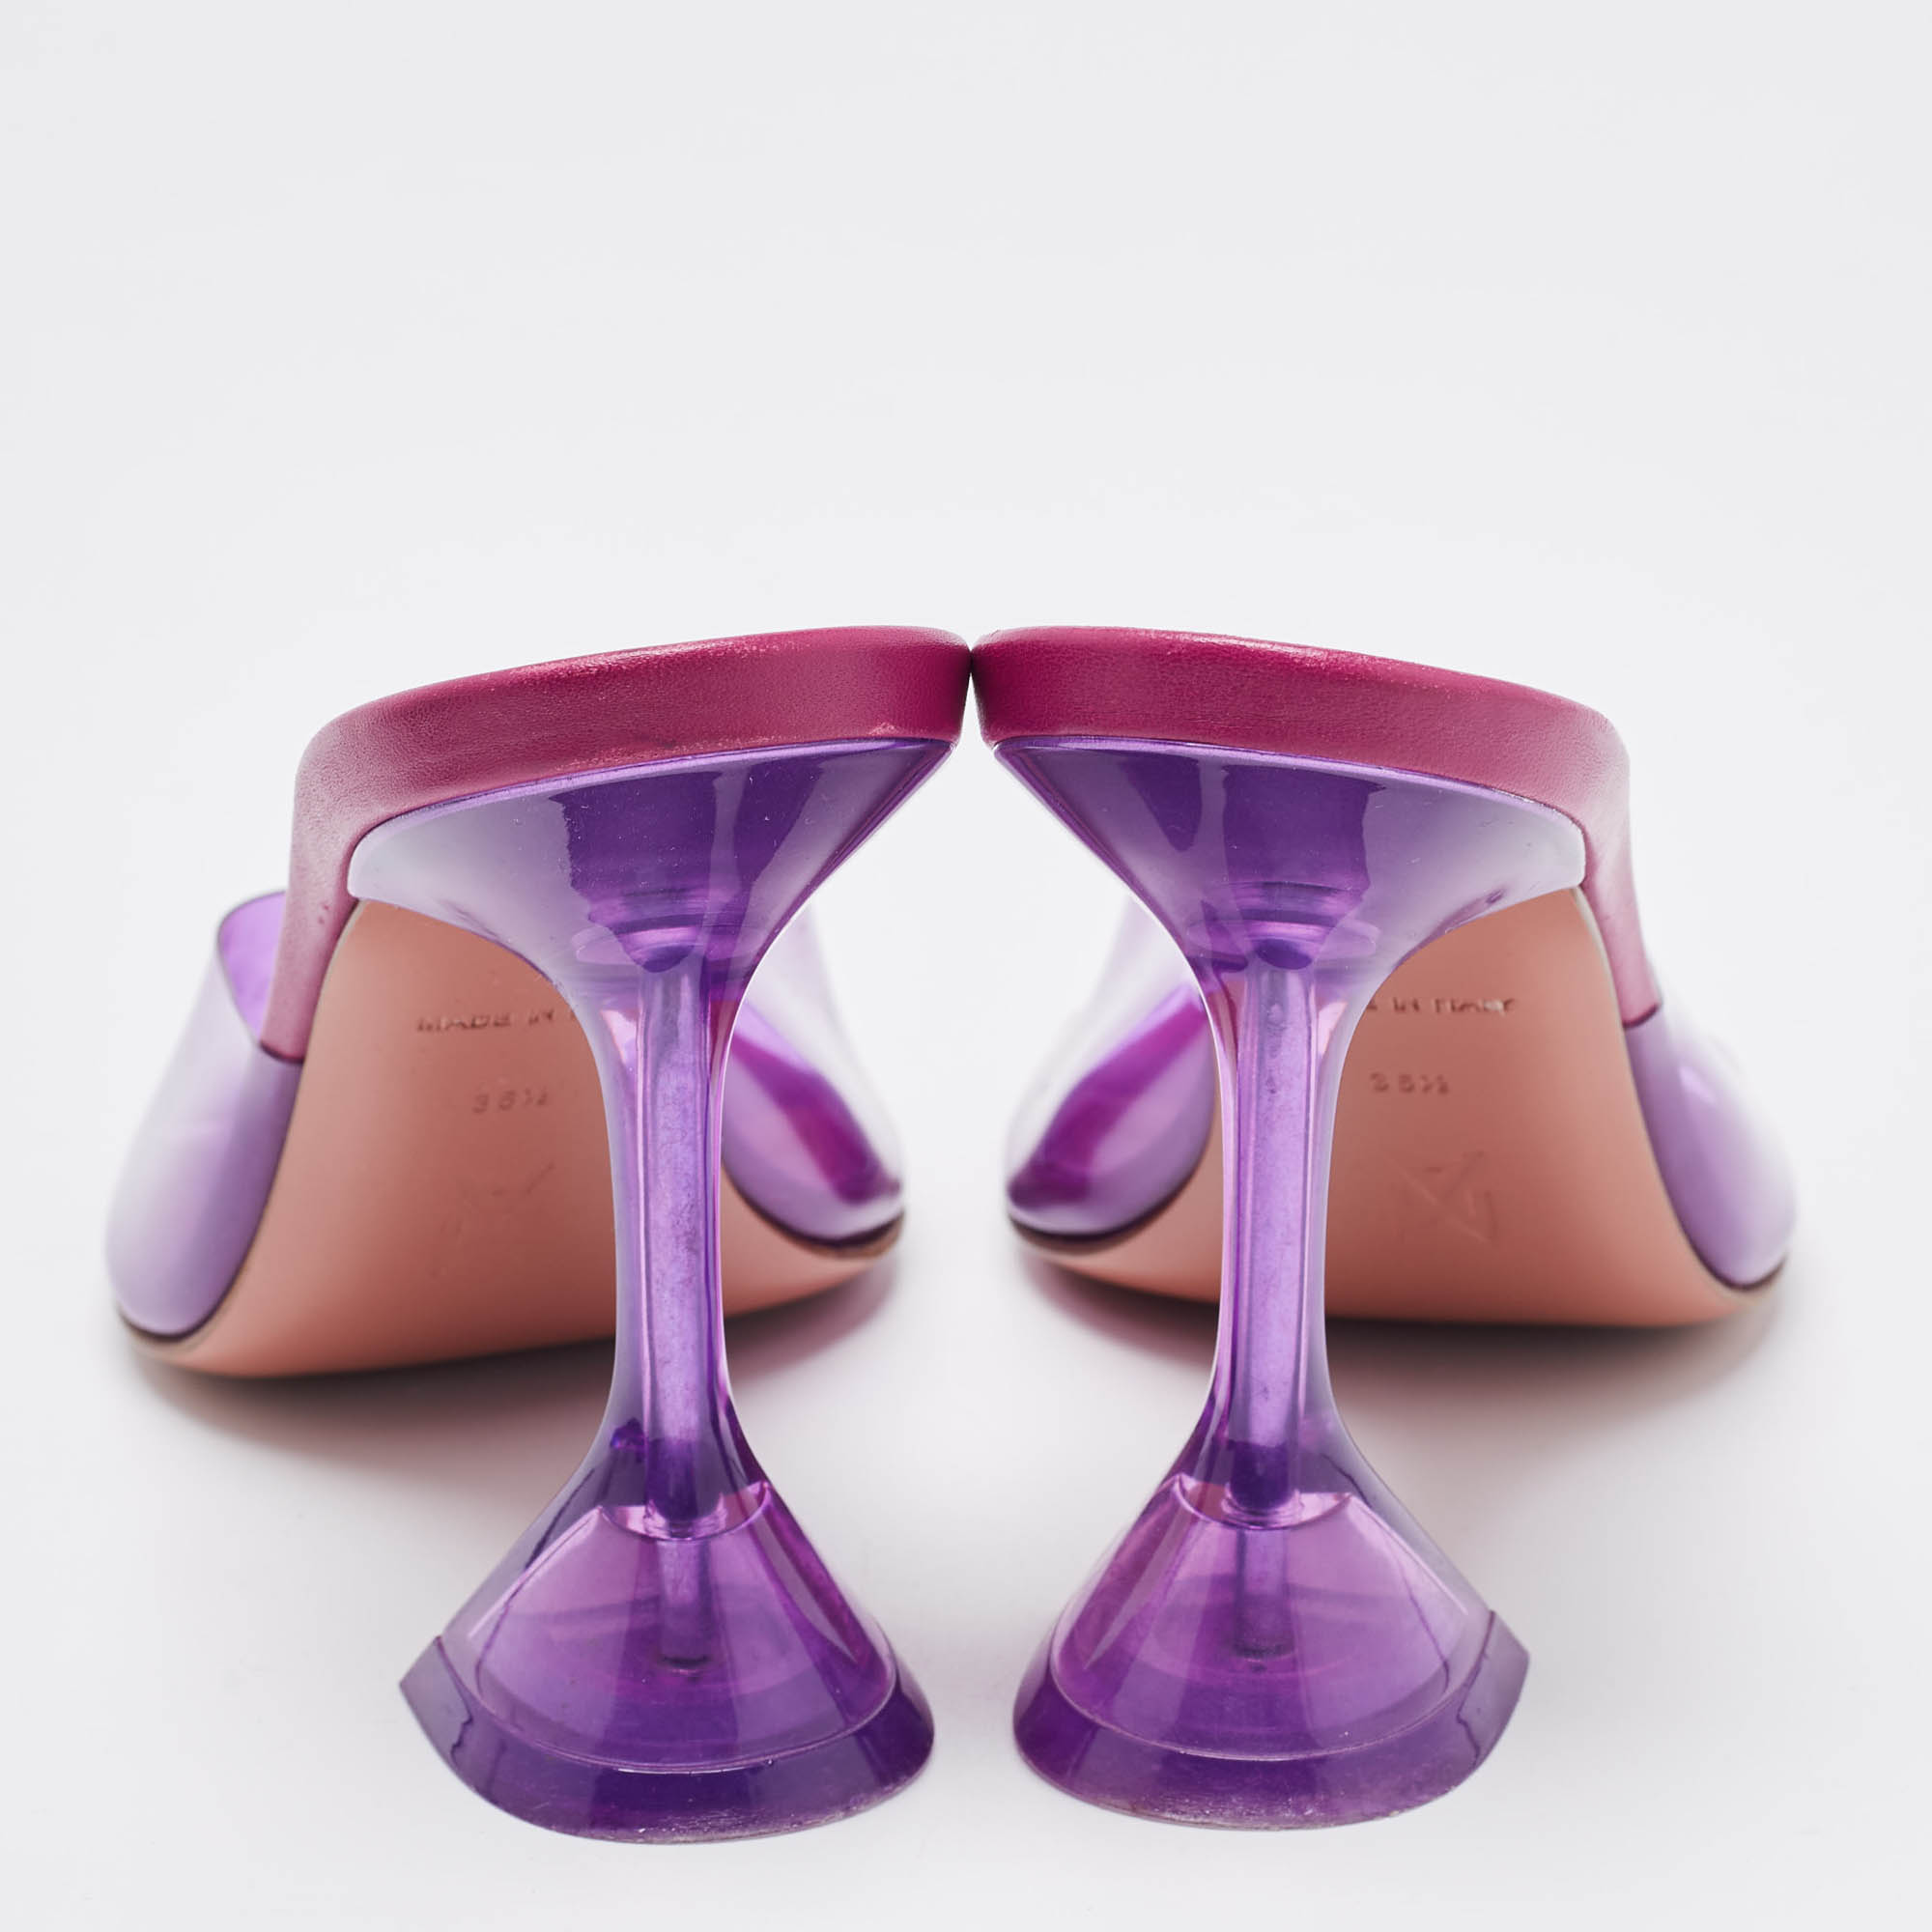 Amina Muaddi Purple PVC Lupita Slide Sandals Size 36.5